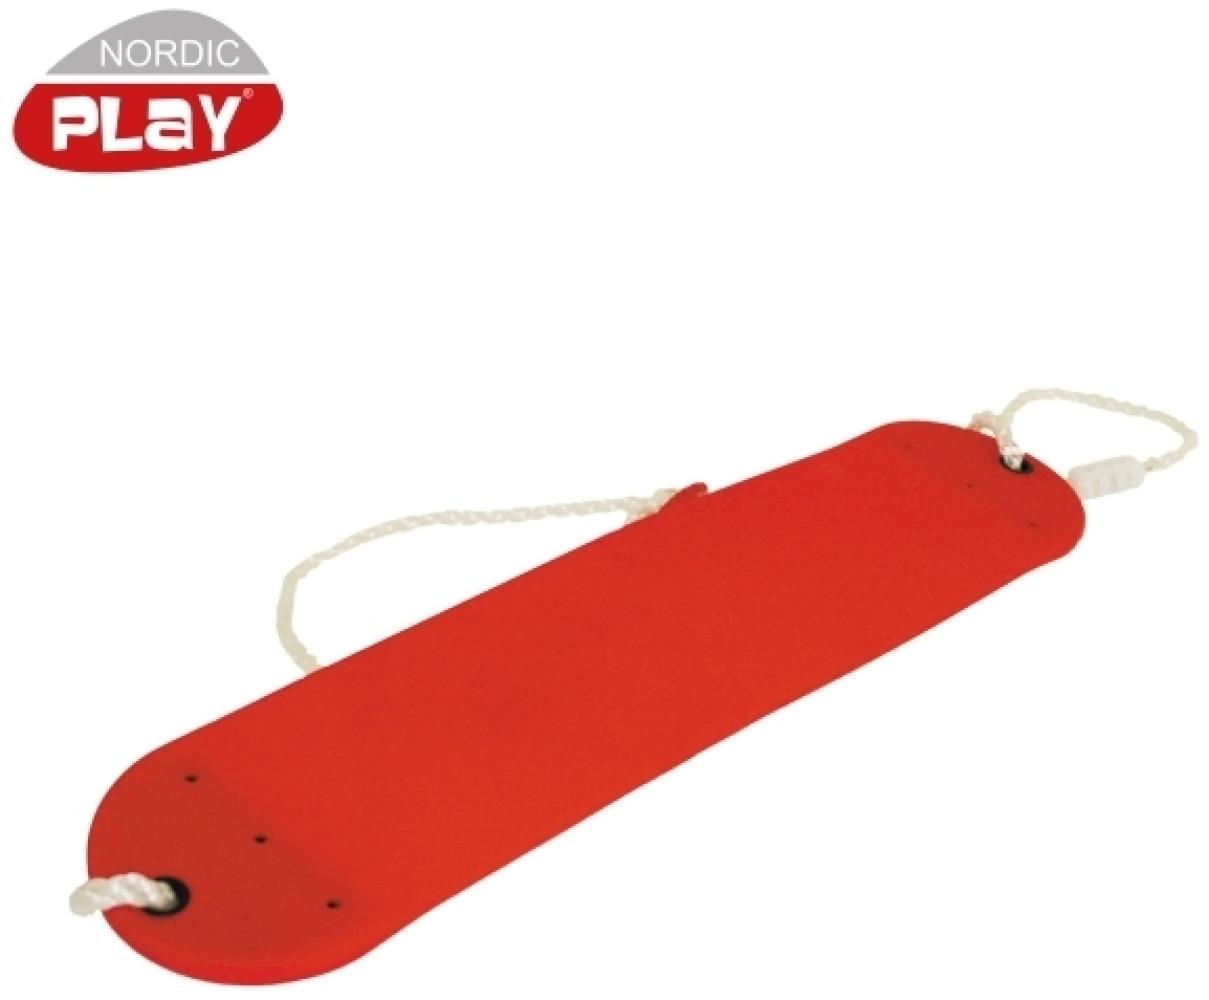 NORDIC PLAY Softschaukel rot mit Seil (805-456) Bild 1